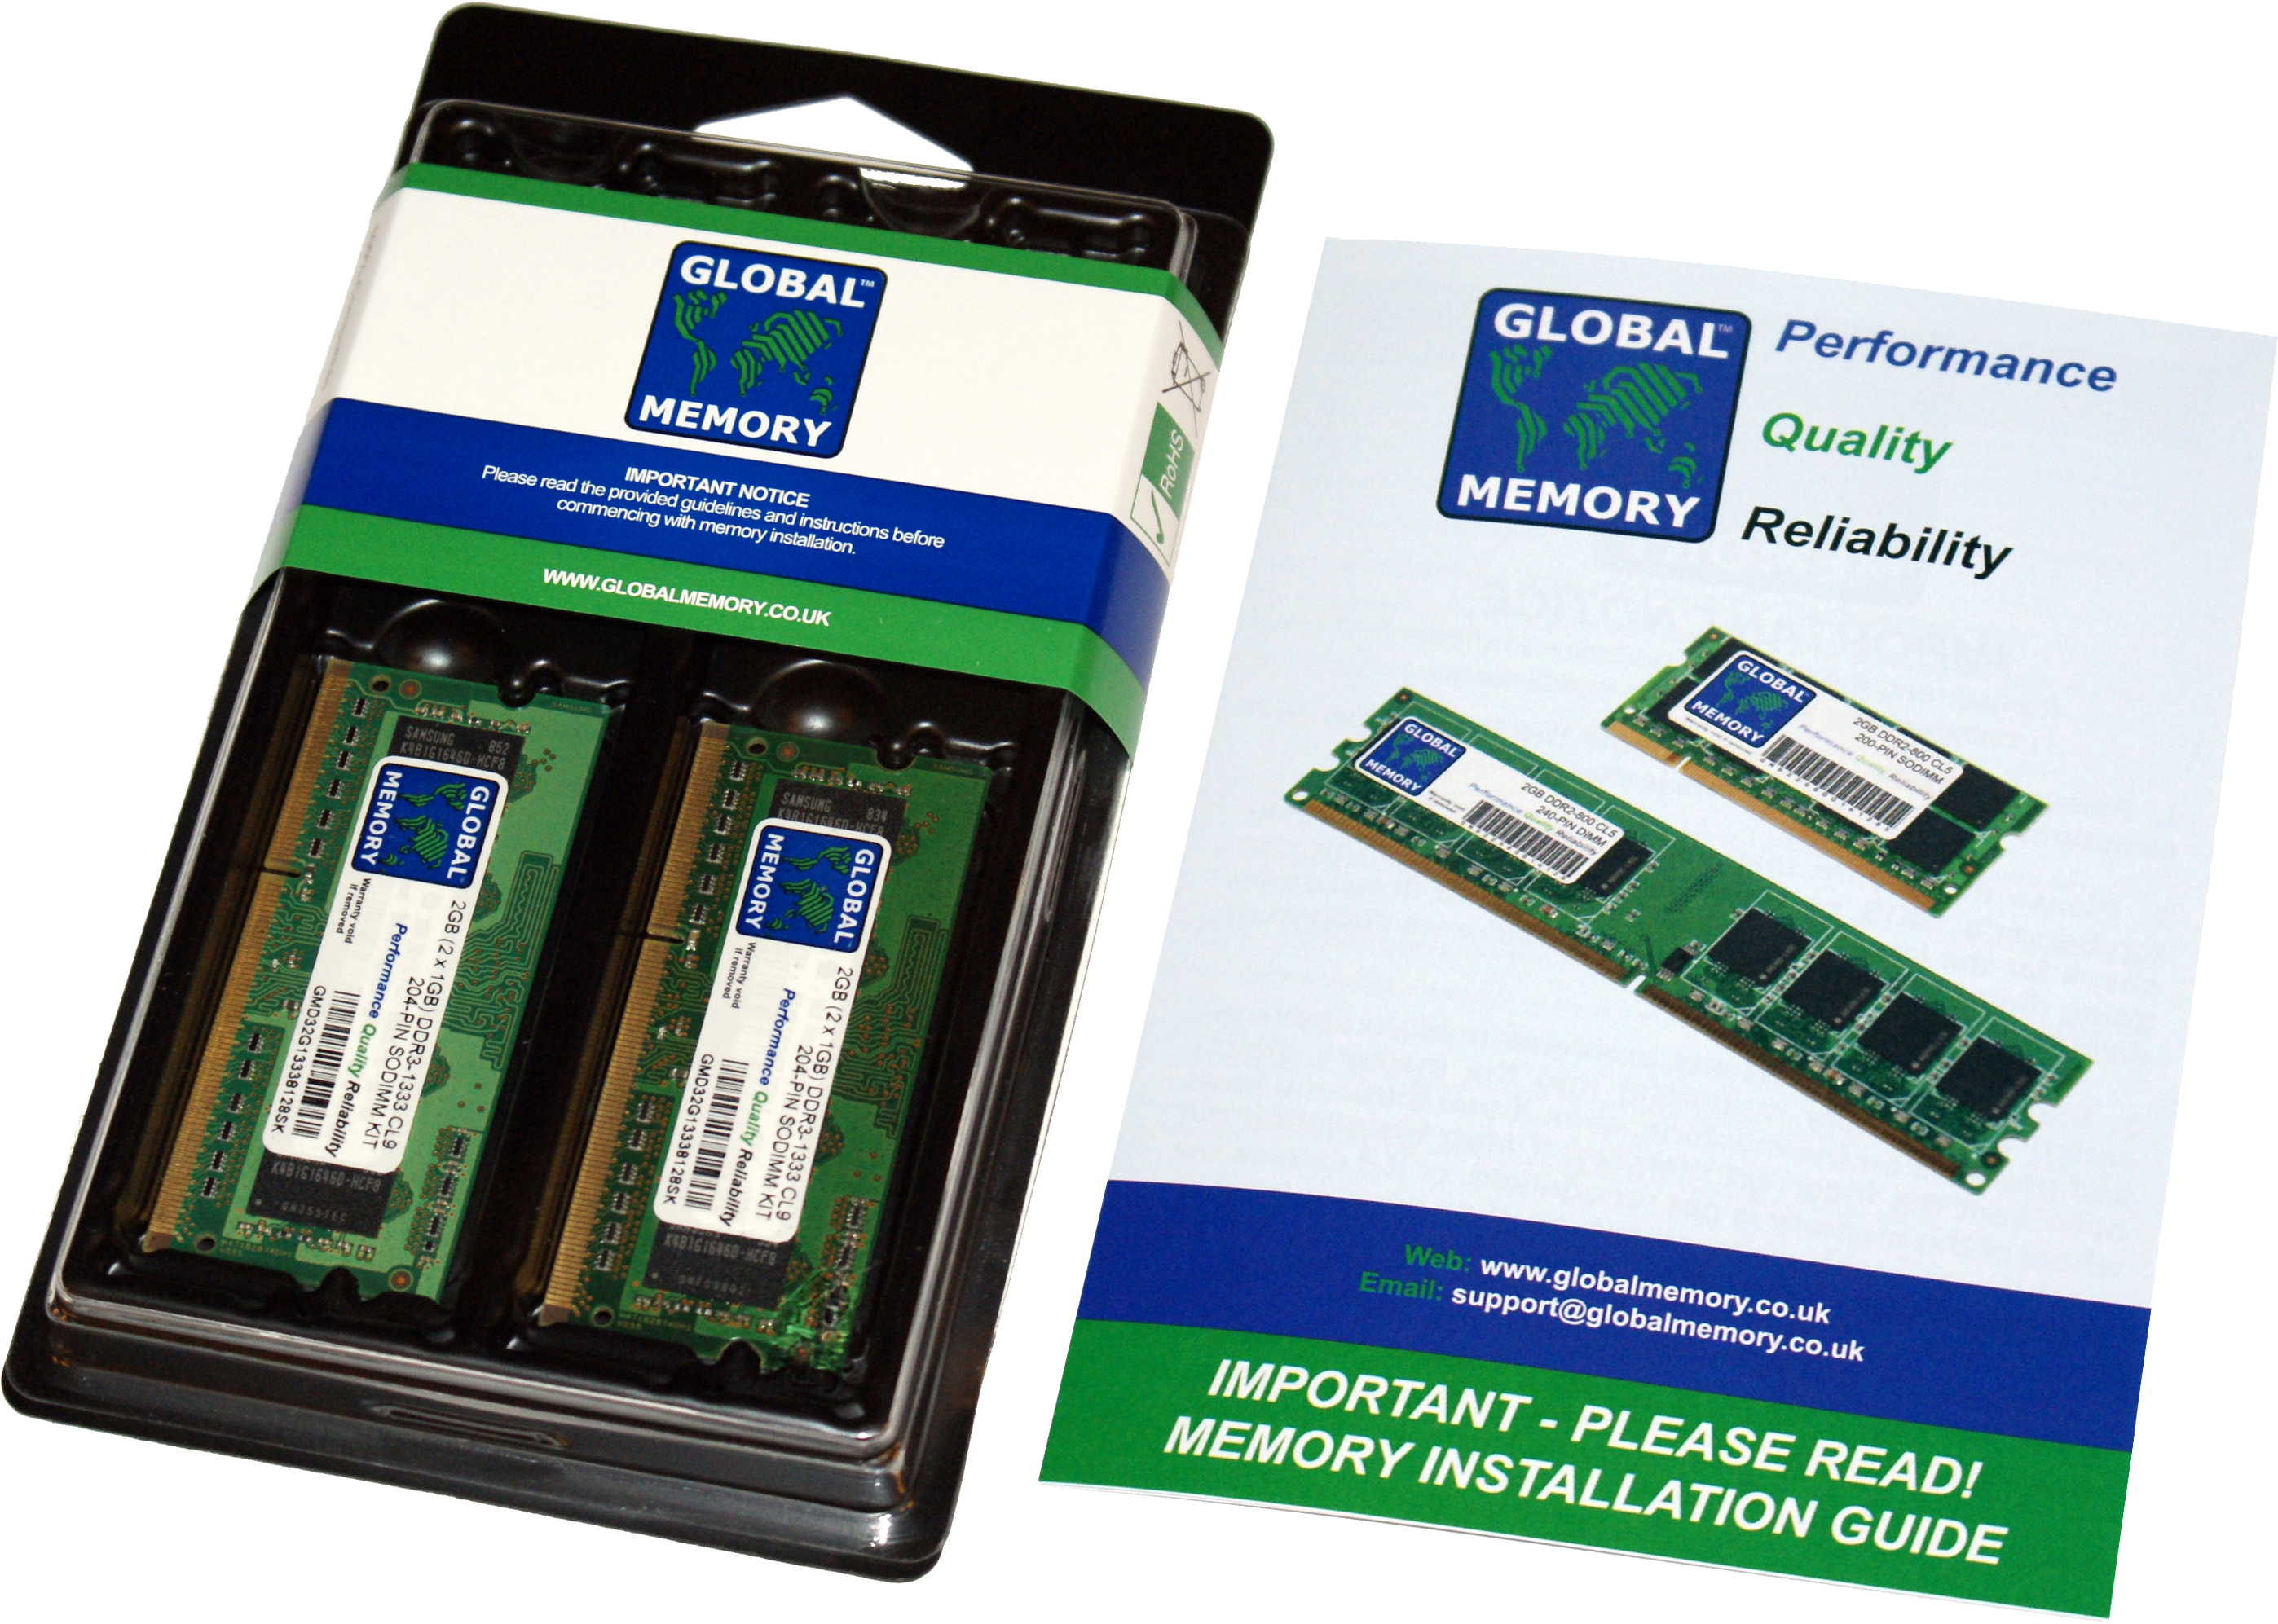 8GB (2 x 4GB) DDR4 2933MHz PC4-23400 260-PIN SODIMM MEMORY RAM KIT FOR FUJITSU LAPTOPS/NOTEBOOKS